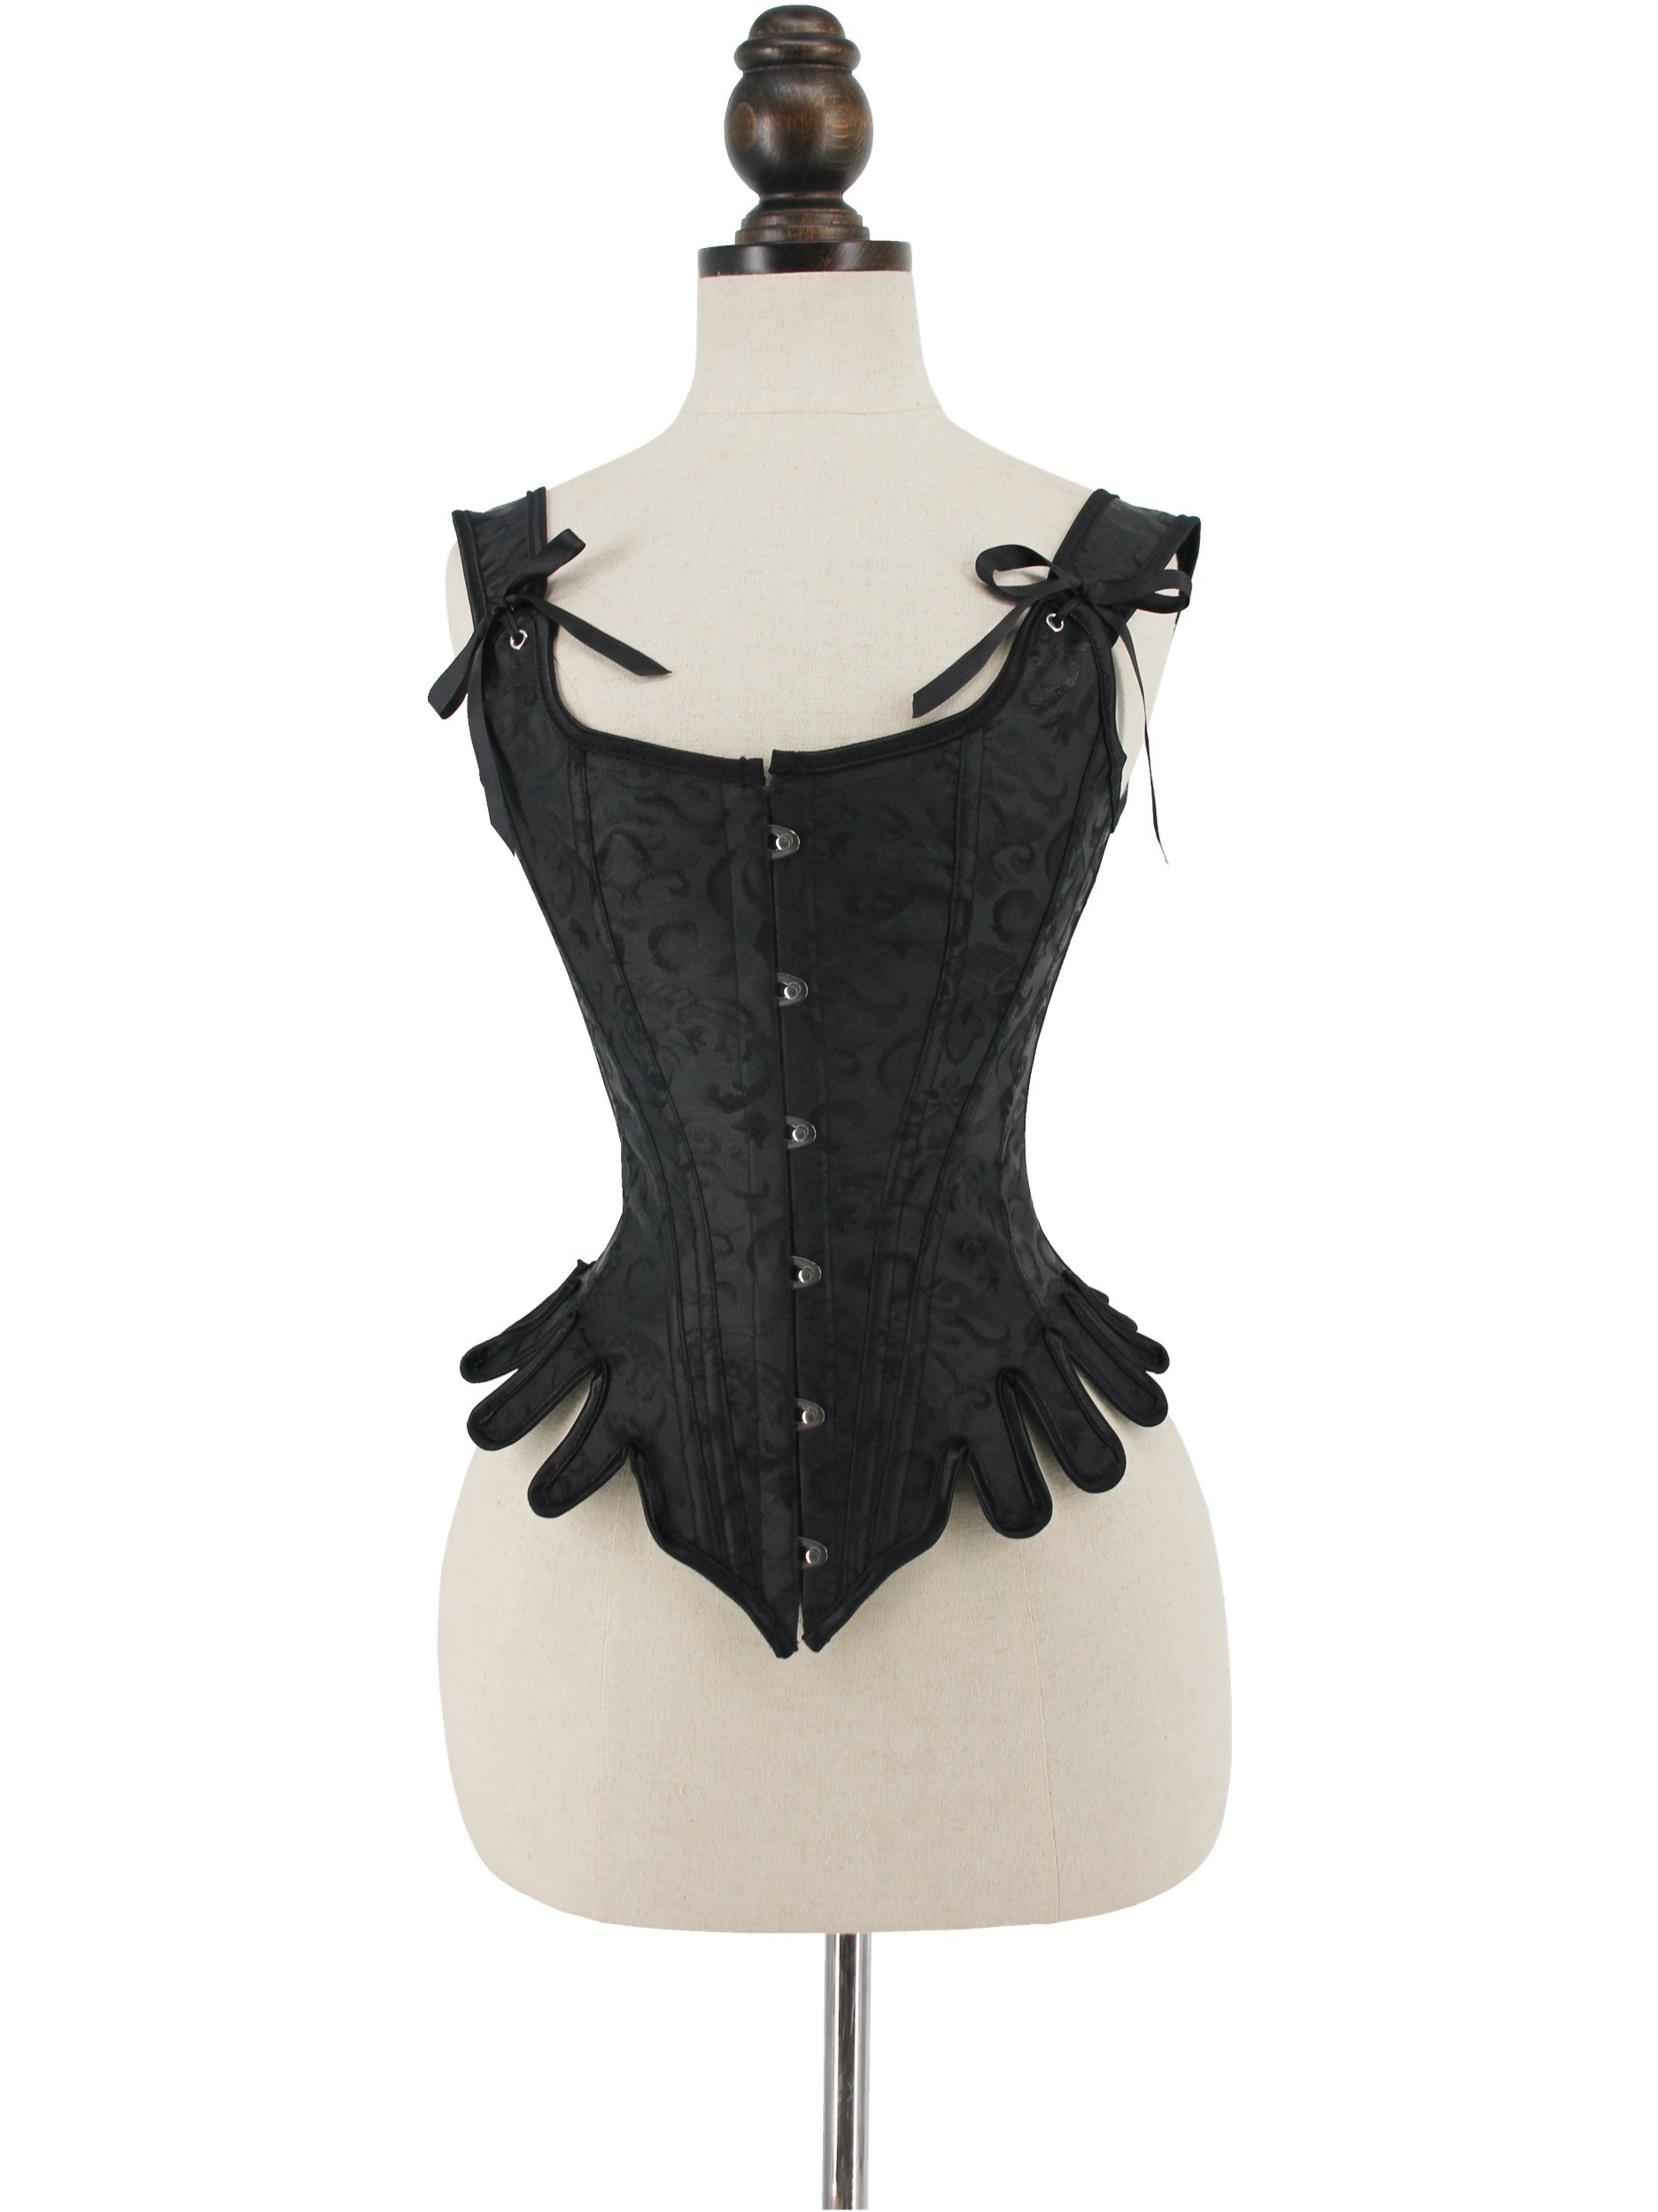 Women's Renaissance Corset Vest Lace Up Vintage Bustier Corset Tops For  Women Pirate Costume Vest Black S-XXL